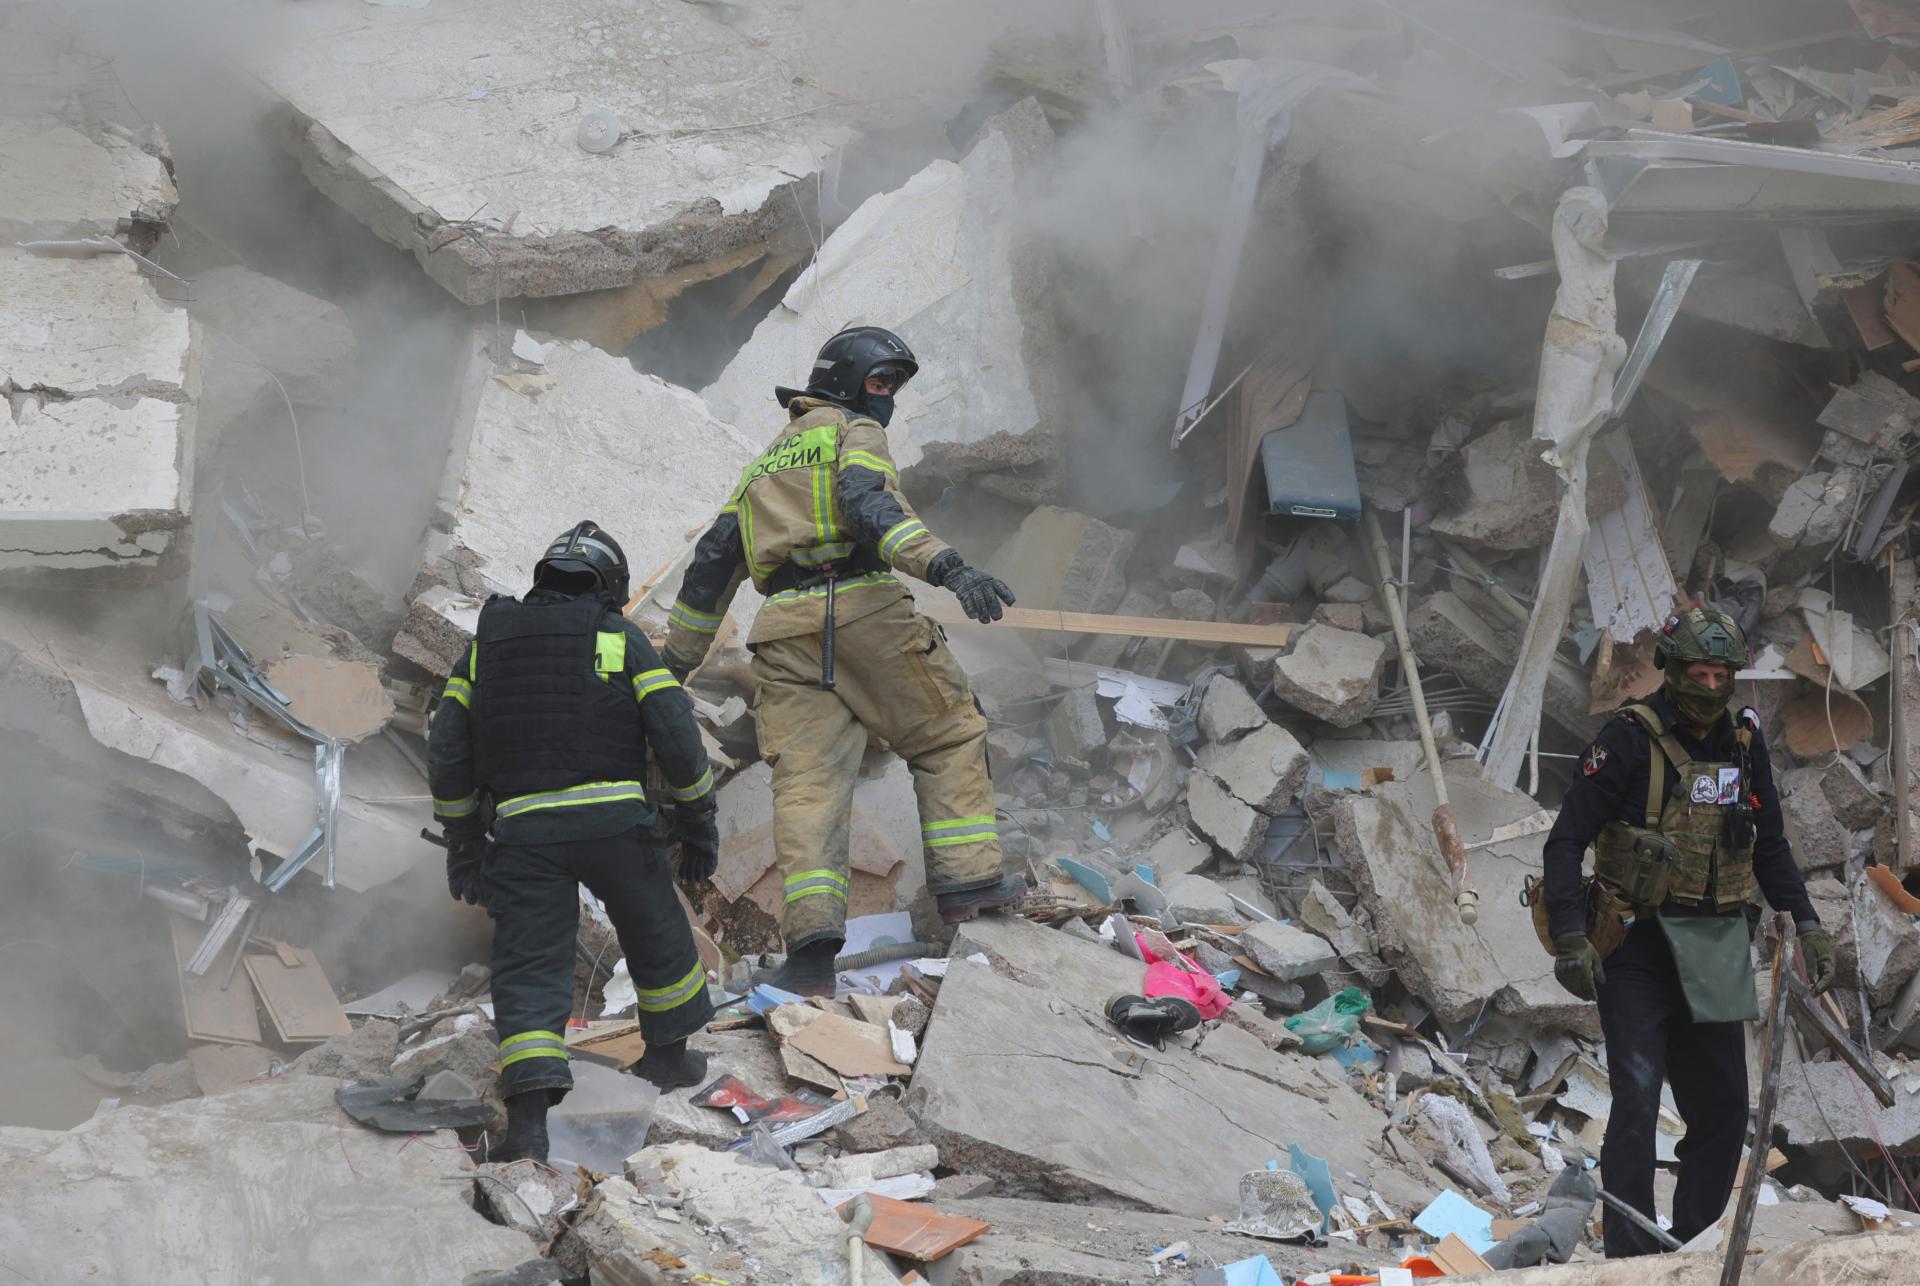 Z trosiek zrútenej obytnej budovy v Belgorode vytiahli šesť tiel, medzi obeťami sú aj deti